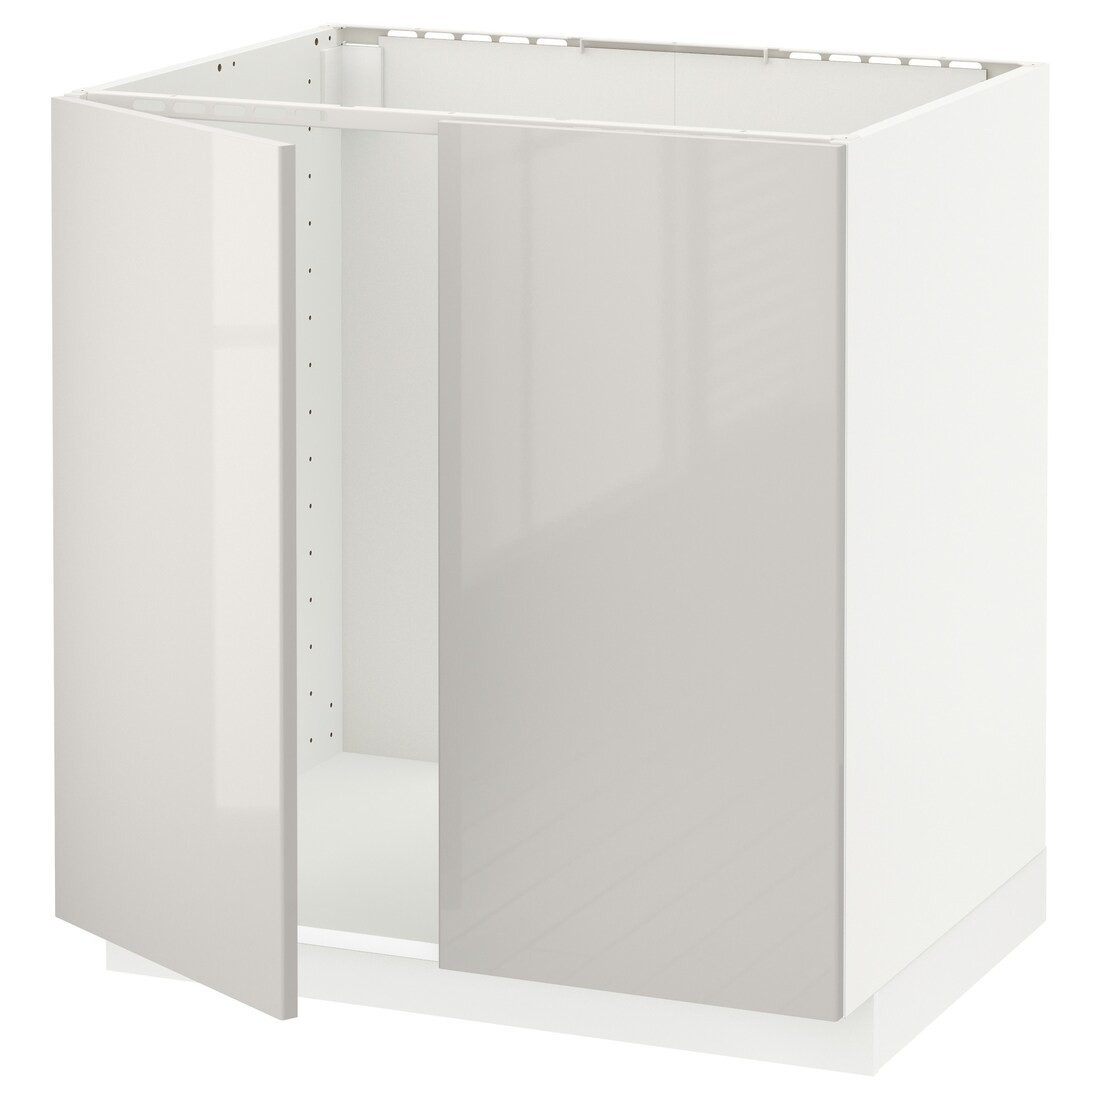 METOD МЕТОД Підлогова шафа для мийки, білий / Ringhult світло-сірий, 80x60 см